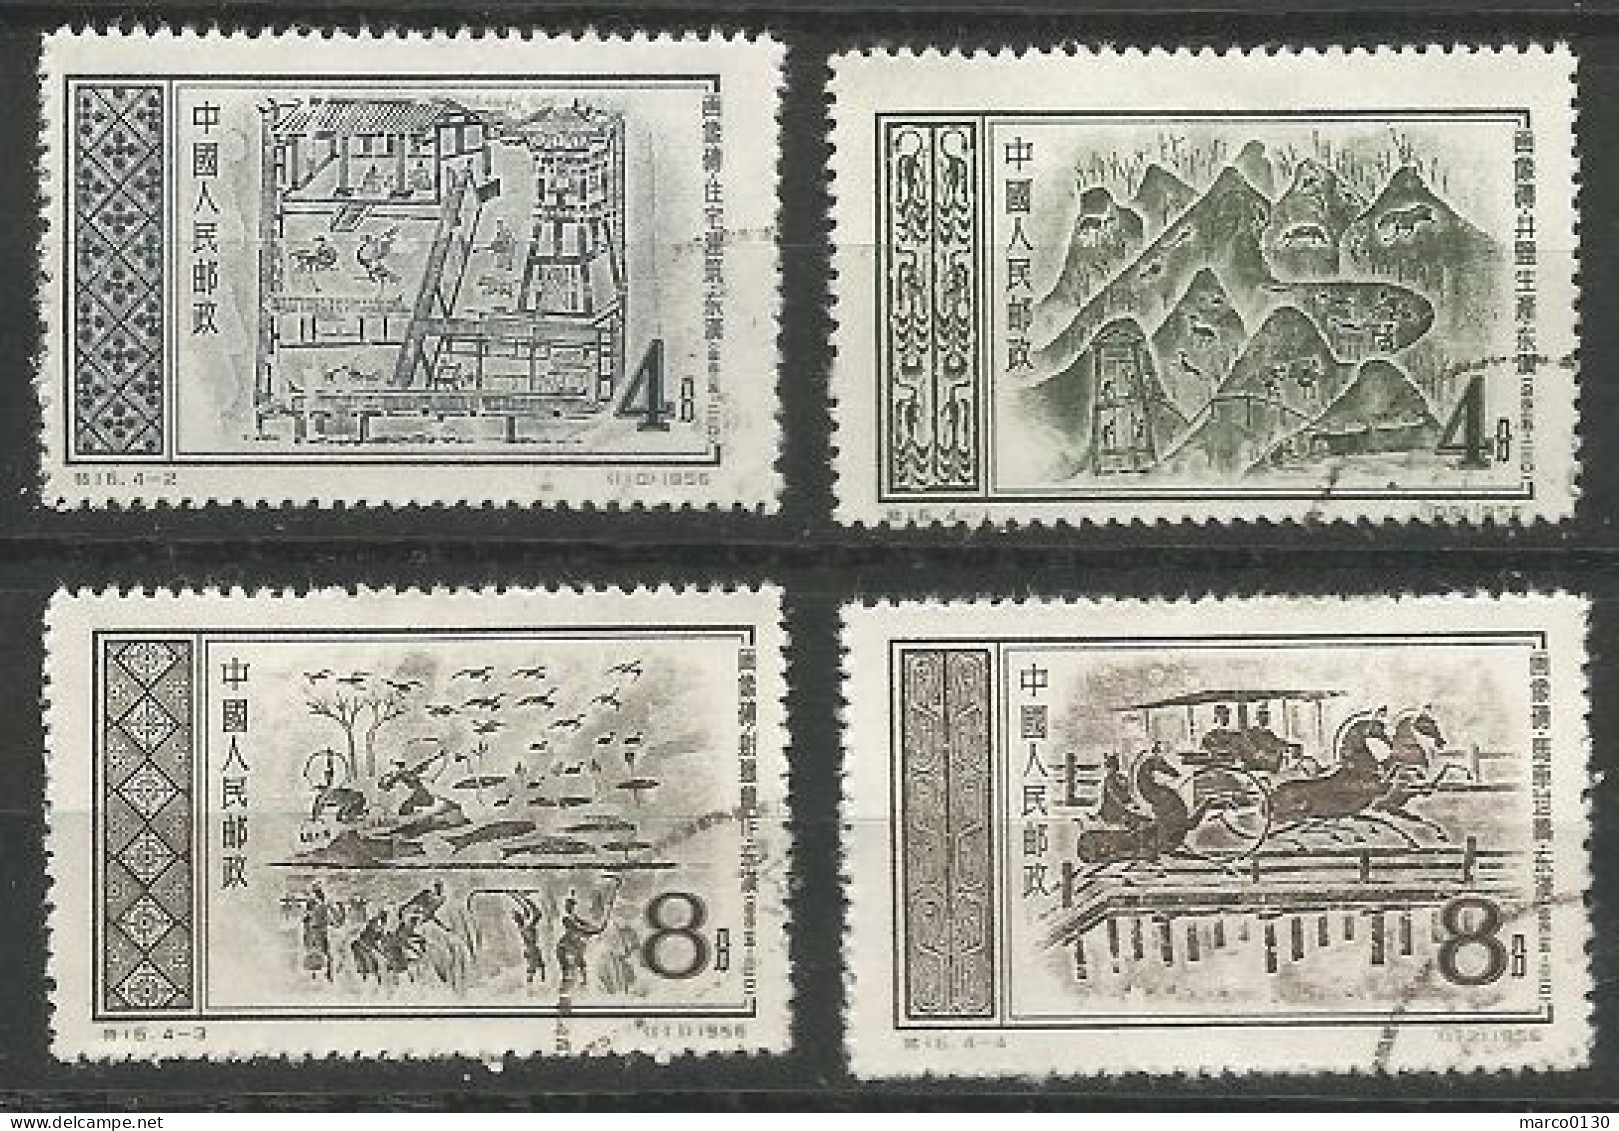 CHINE N° 1081 + N° 1082 + N° 1083 + N° 1084 OBLITERE - Used Stamps